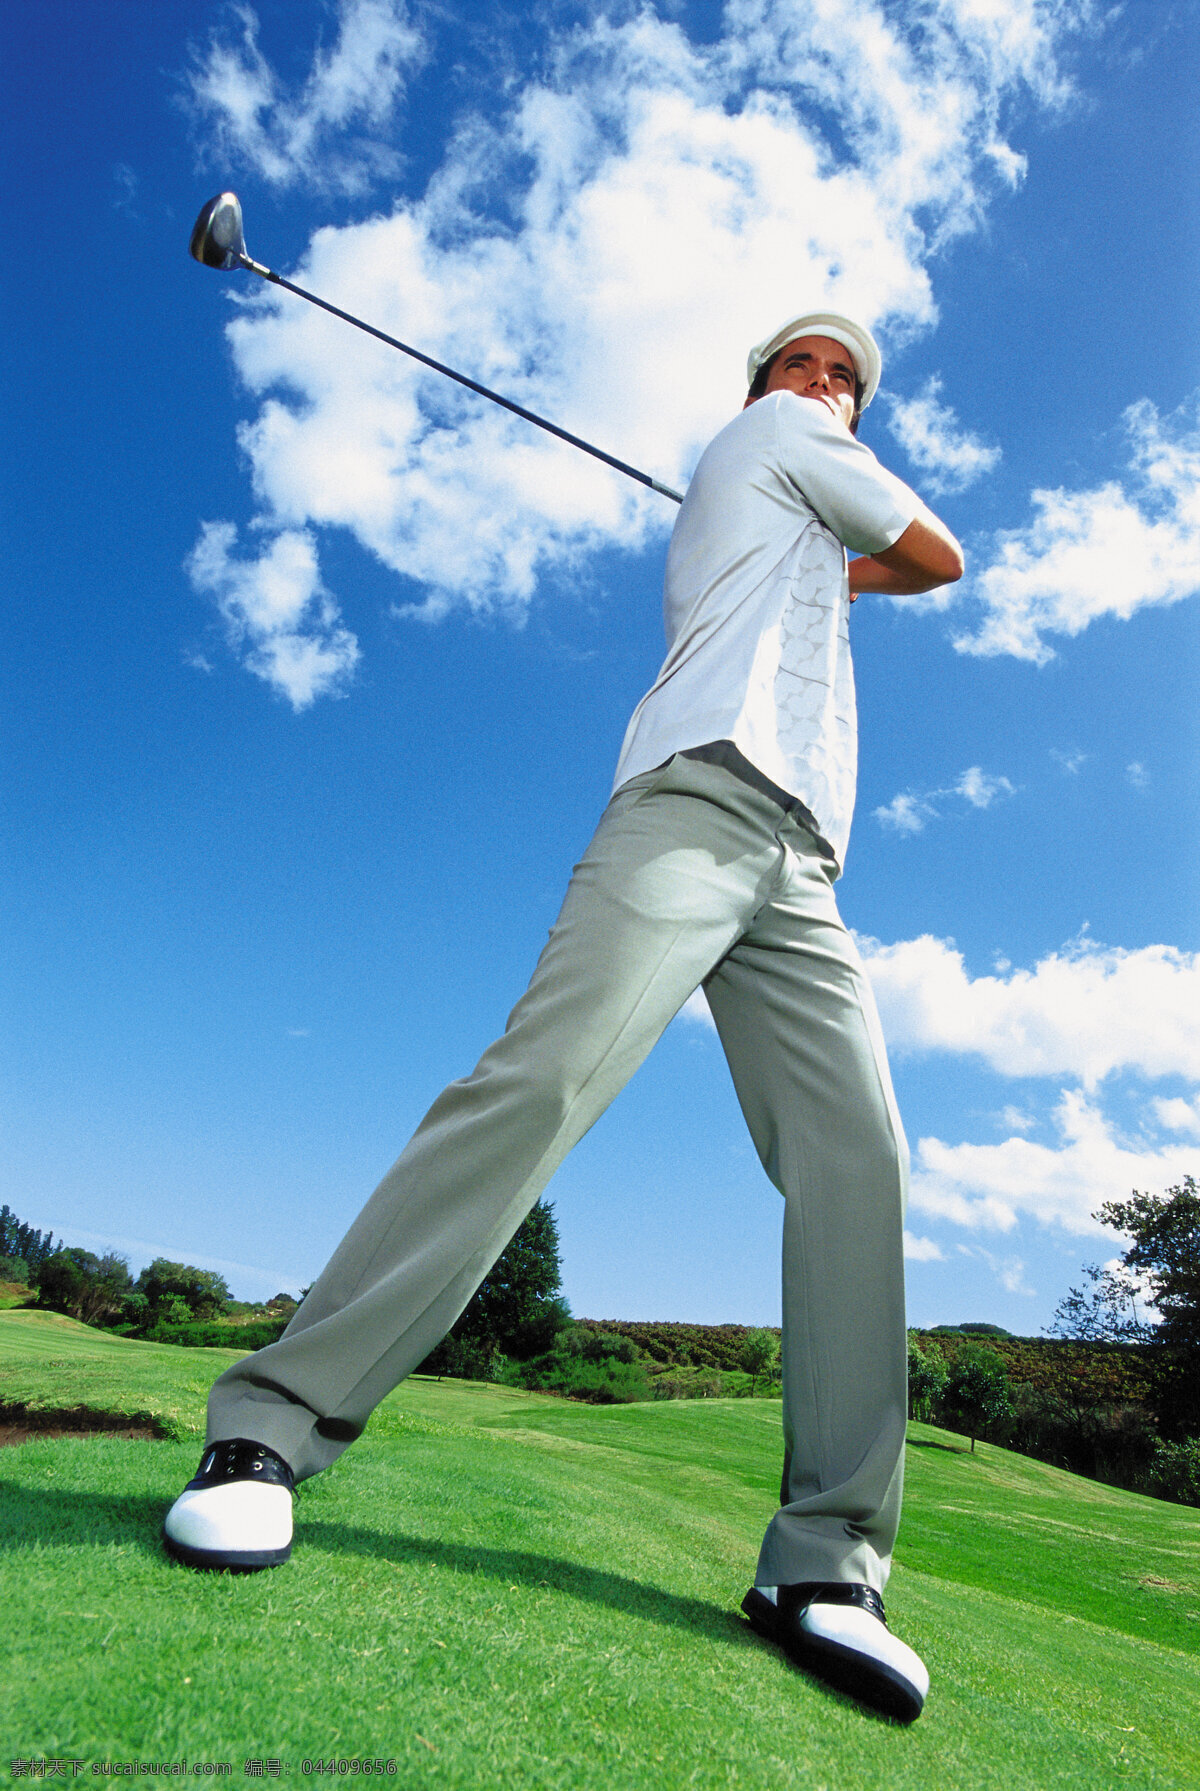 高尔夫球 外国 男人 打高尔夫球 男性 草地 风景 树林 蓝天 太阳 休闲男人 休闲生活 人物图片 体育运动 生活百科